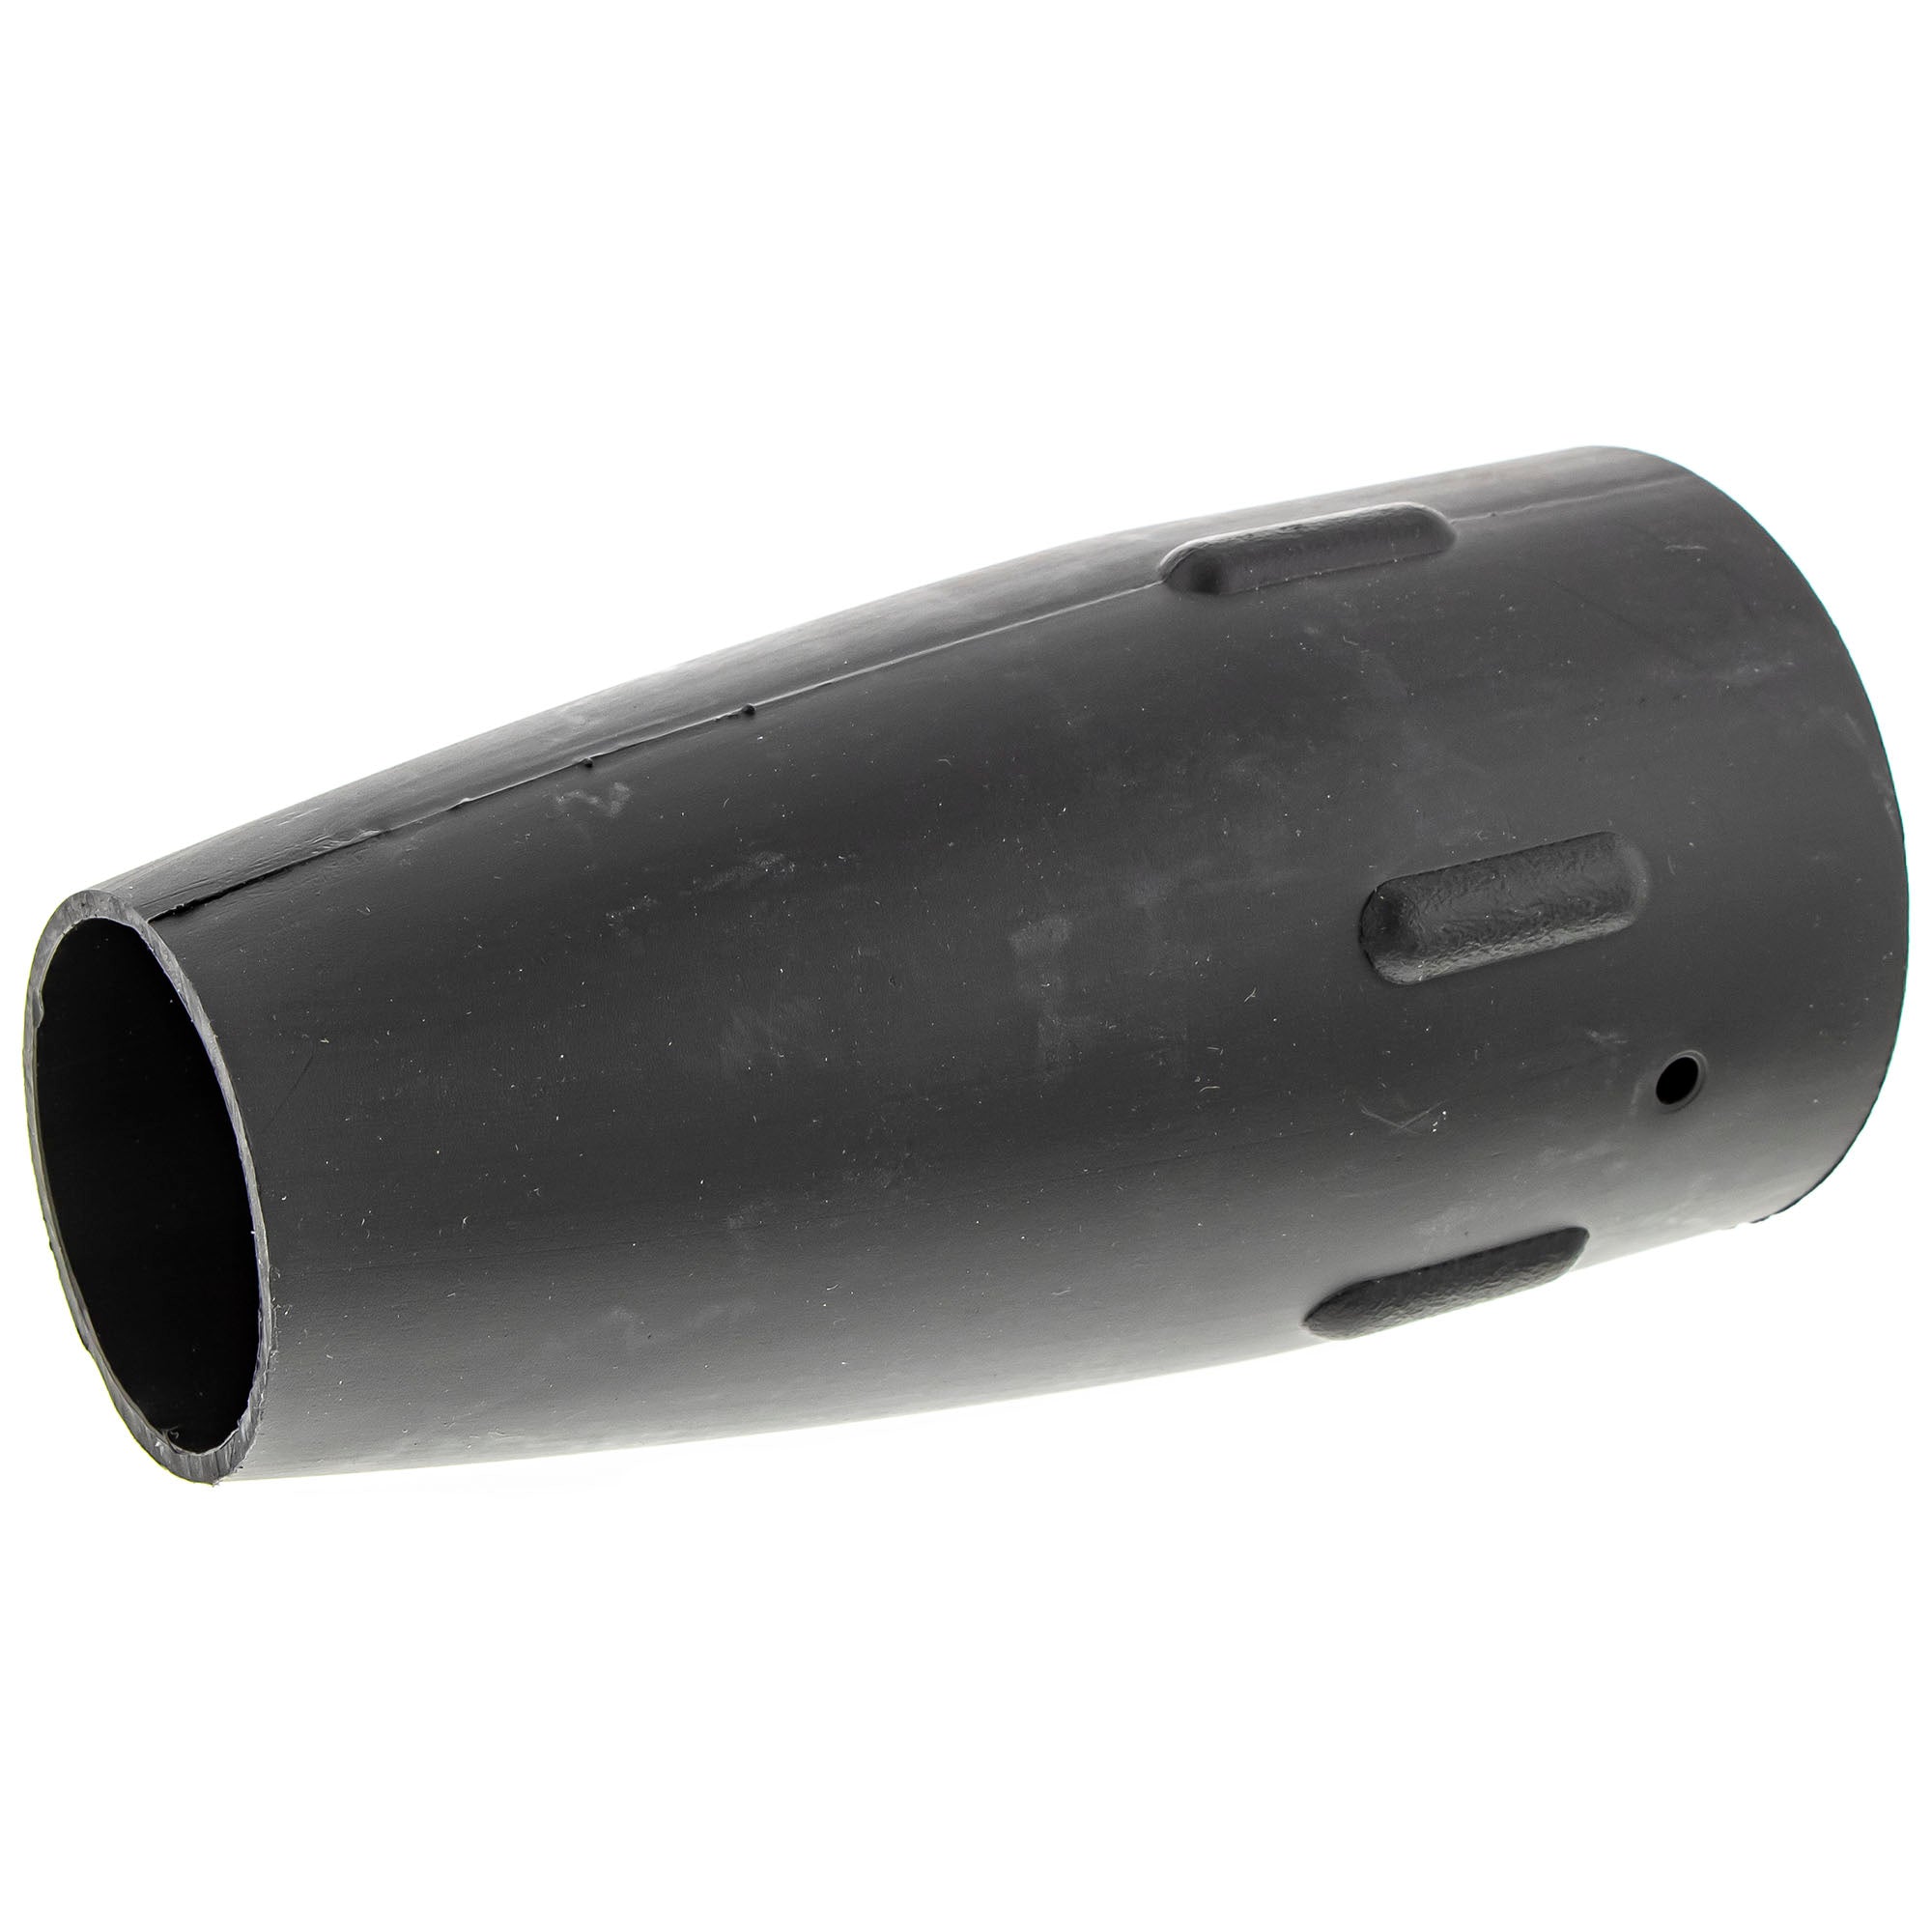 CUB CADET 791-181633 Concentrator Nozzle